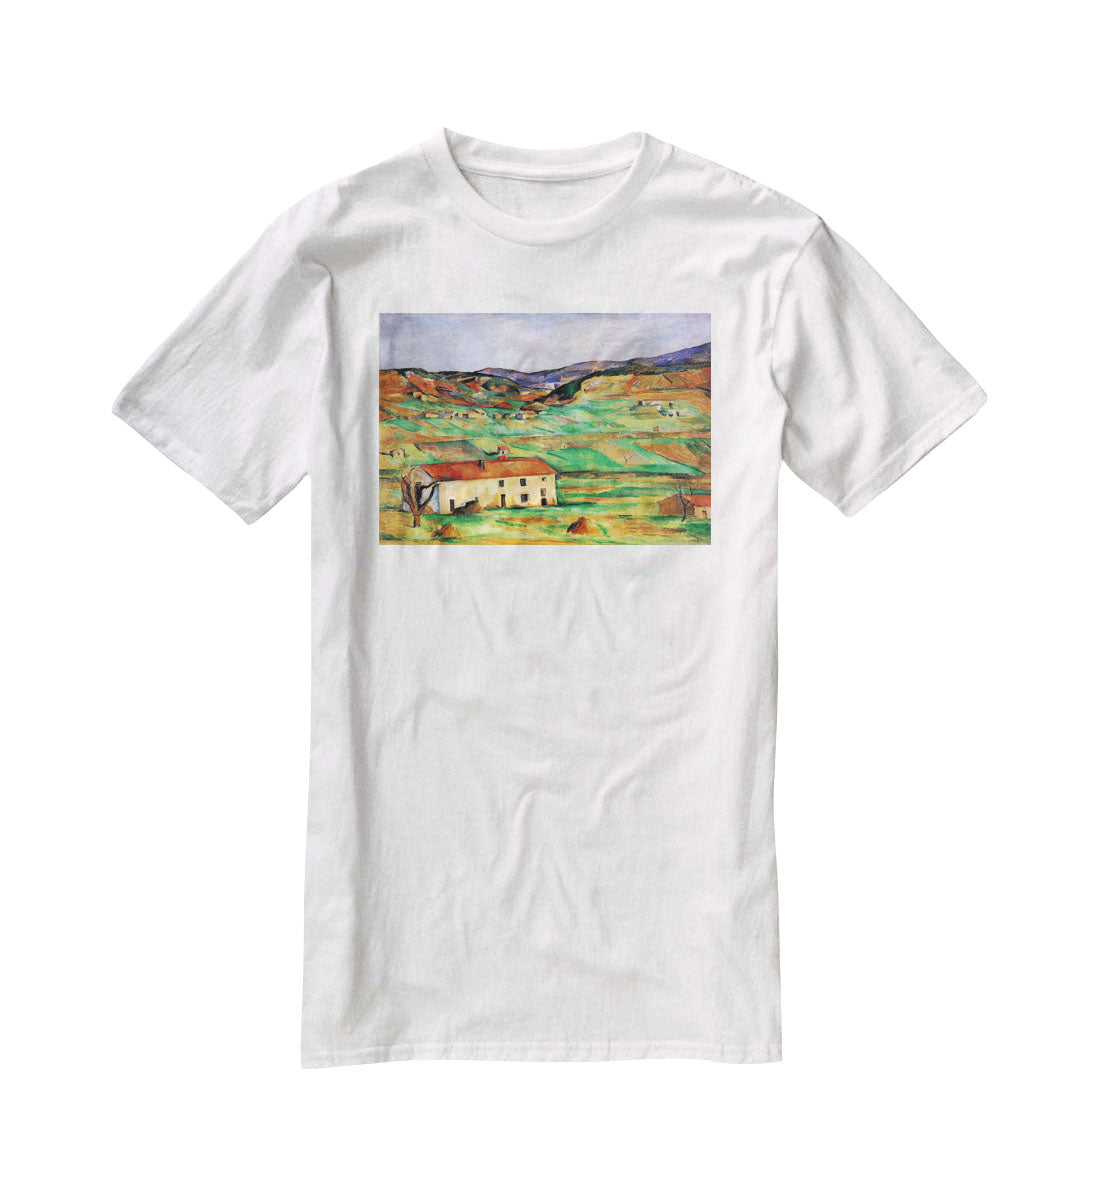 Around Gardanne by Cezanne T-Shirt - Canvas Art Rocks - 5